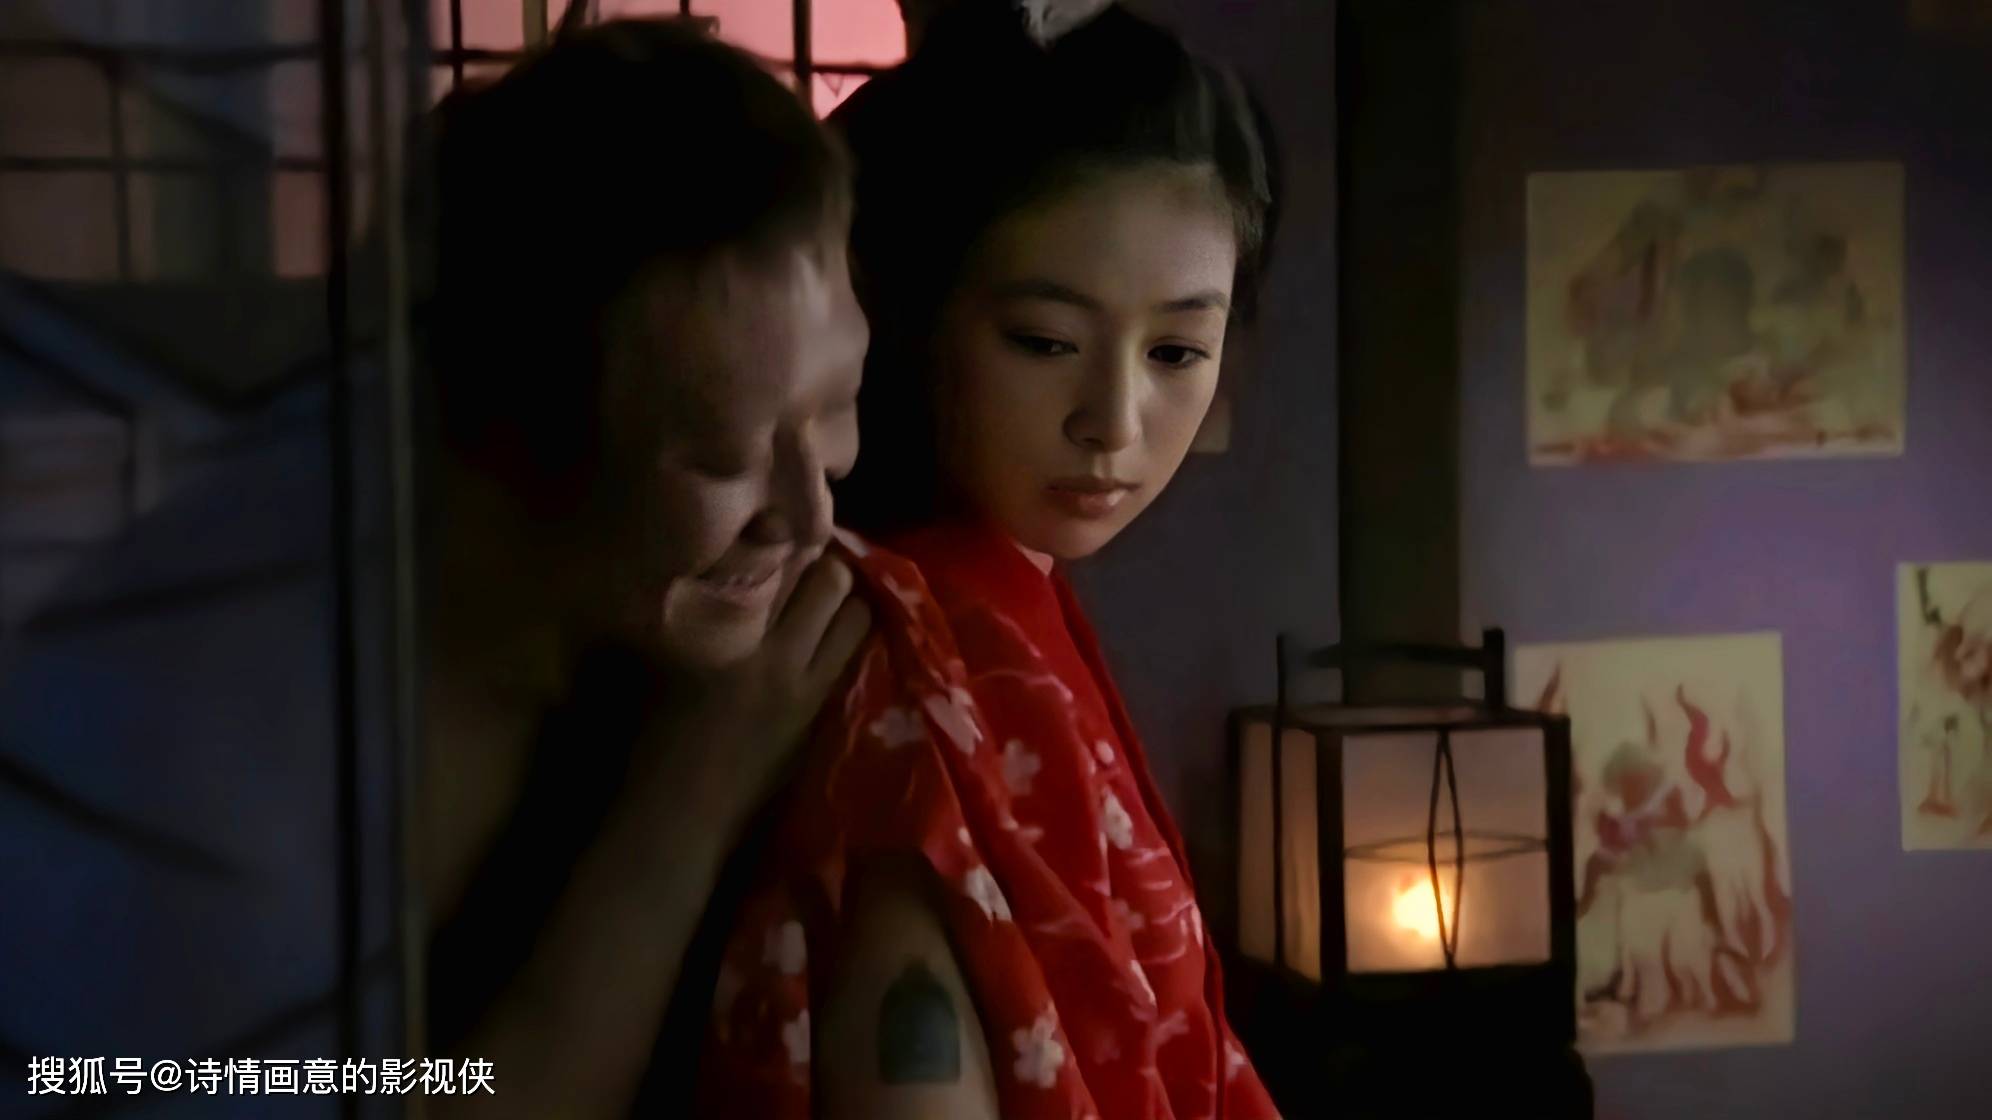 日本禁忌题材电影《樱姬》:情欲与抉择的江户物语